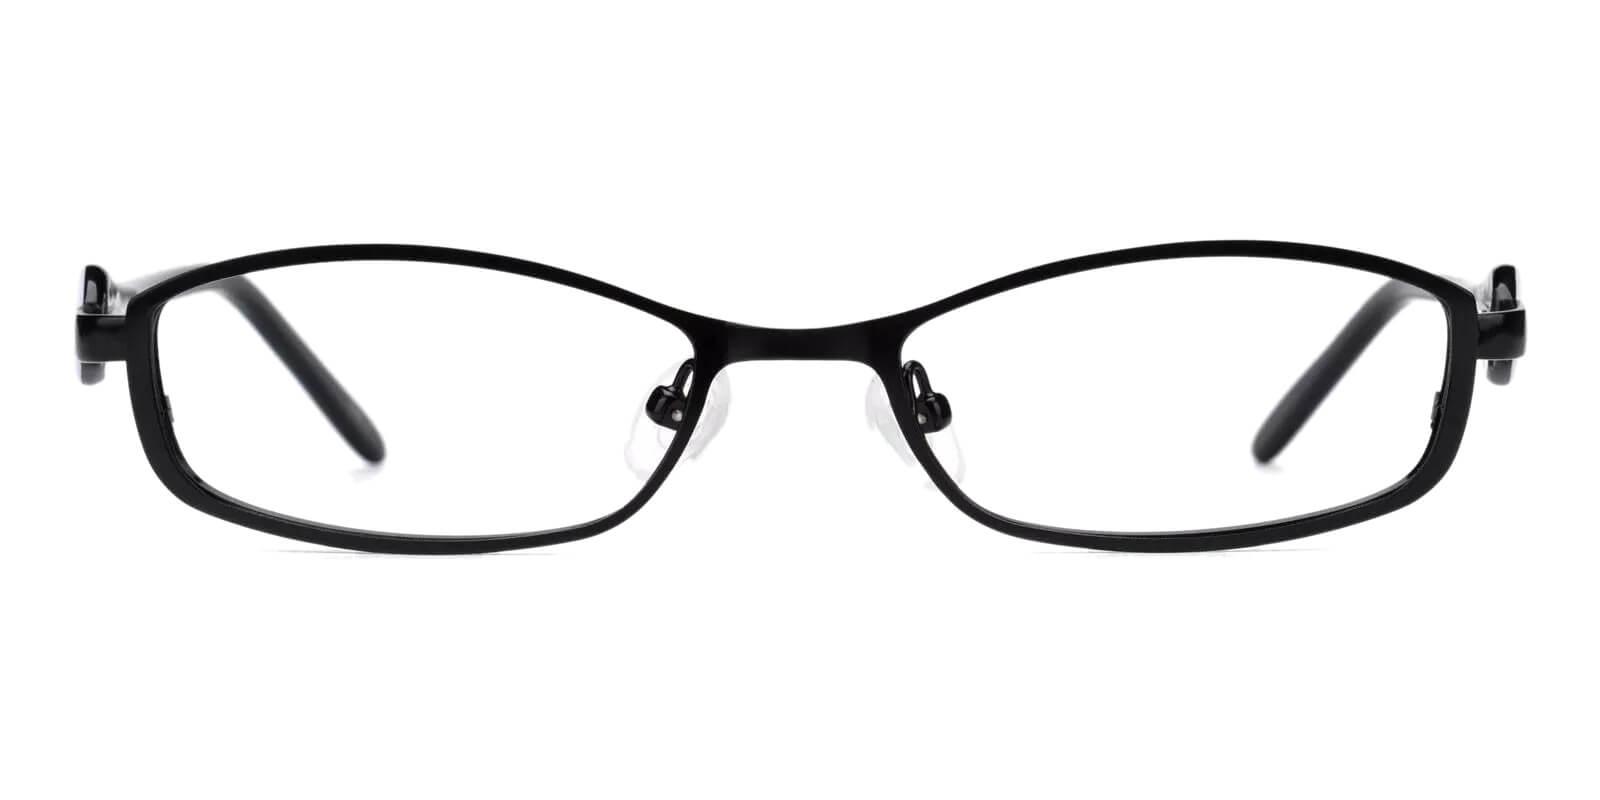 Kids-Caspar Black Metal Eyeglasses , Fashion , SpringHinges , NosePads Frames from ABBE Glasses